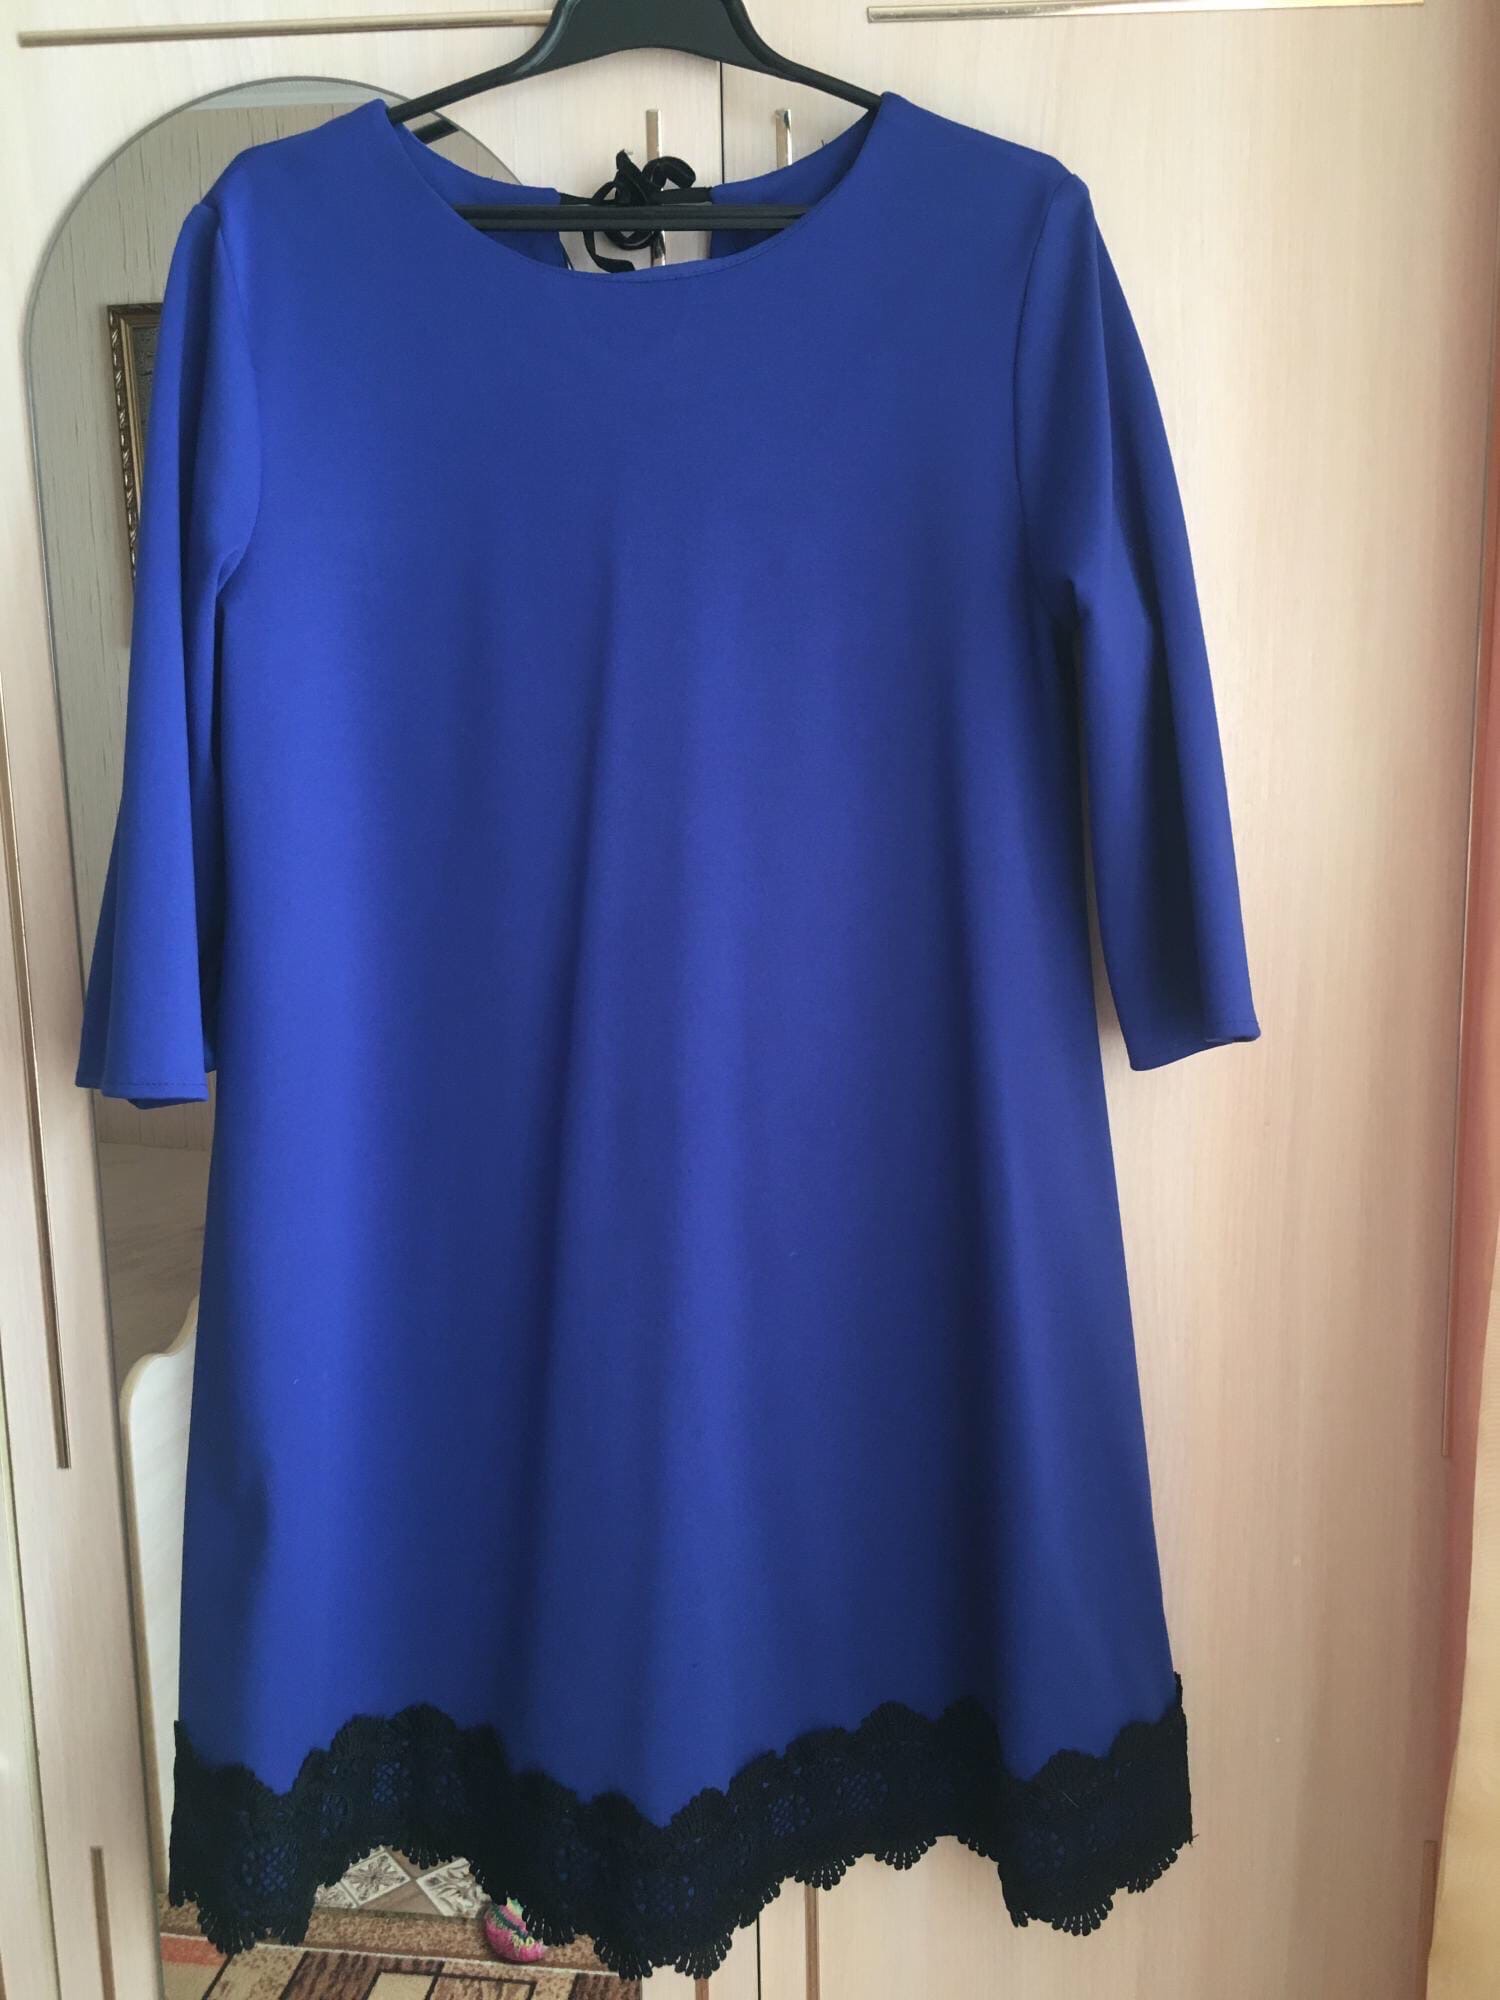 Купить синее платье 46-48 размера. В | Объявления Орска и Новотроицка №3431